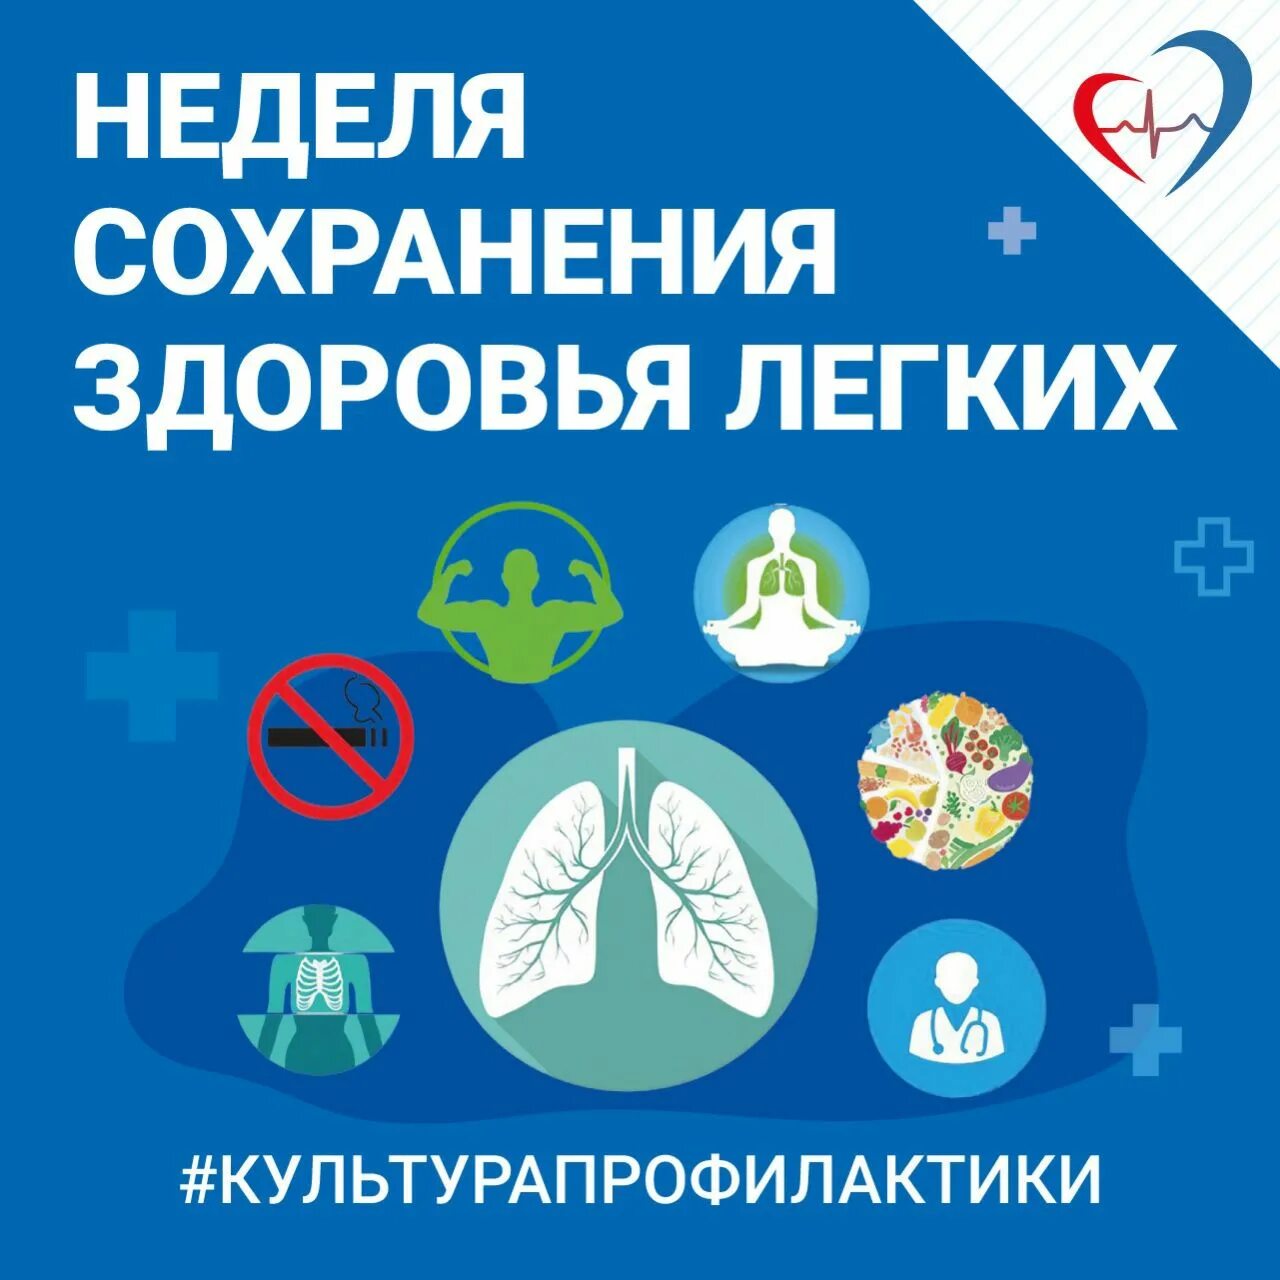 6 12 мая неделя сохранения здоровья легких. Неделя сохранения здоровья легких. Неделя сохранения здоровья легких борьба с астмой с 1- 7 мая. Здоровье легких картинки. Всемирная неделя борьбы с заболеваниями легких.